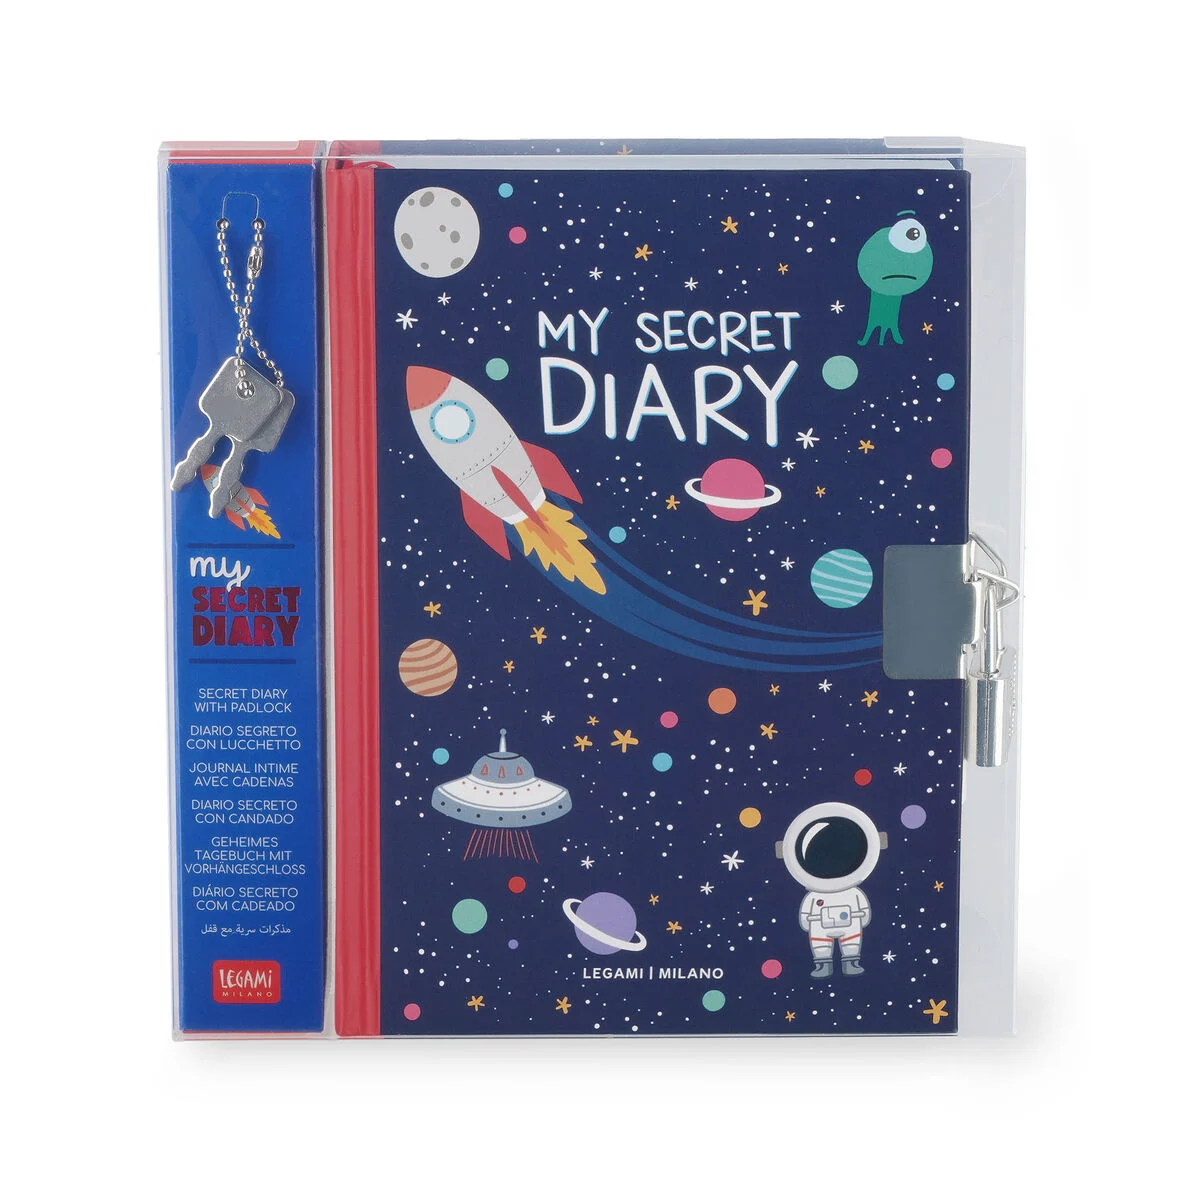 LEGAMI MILANO Diario Segreto con Lucchetto - My Secret Diary Space -   lo store on line della Cartolibreria Pegasus